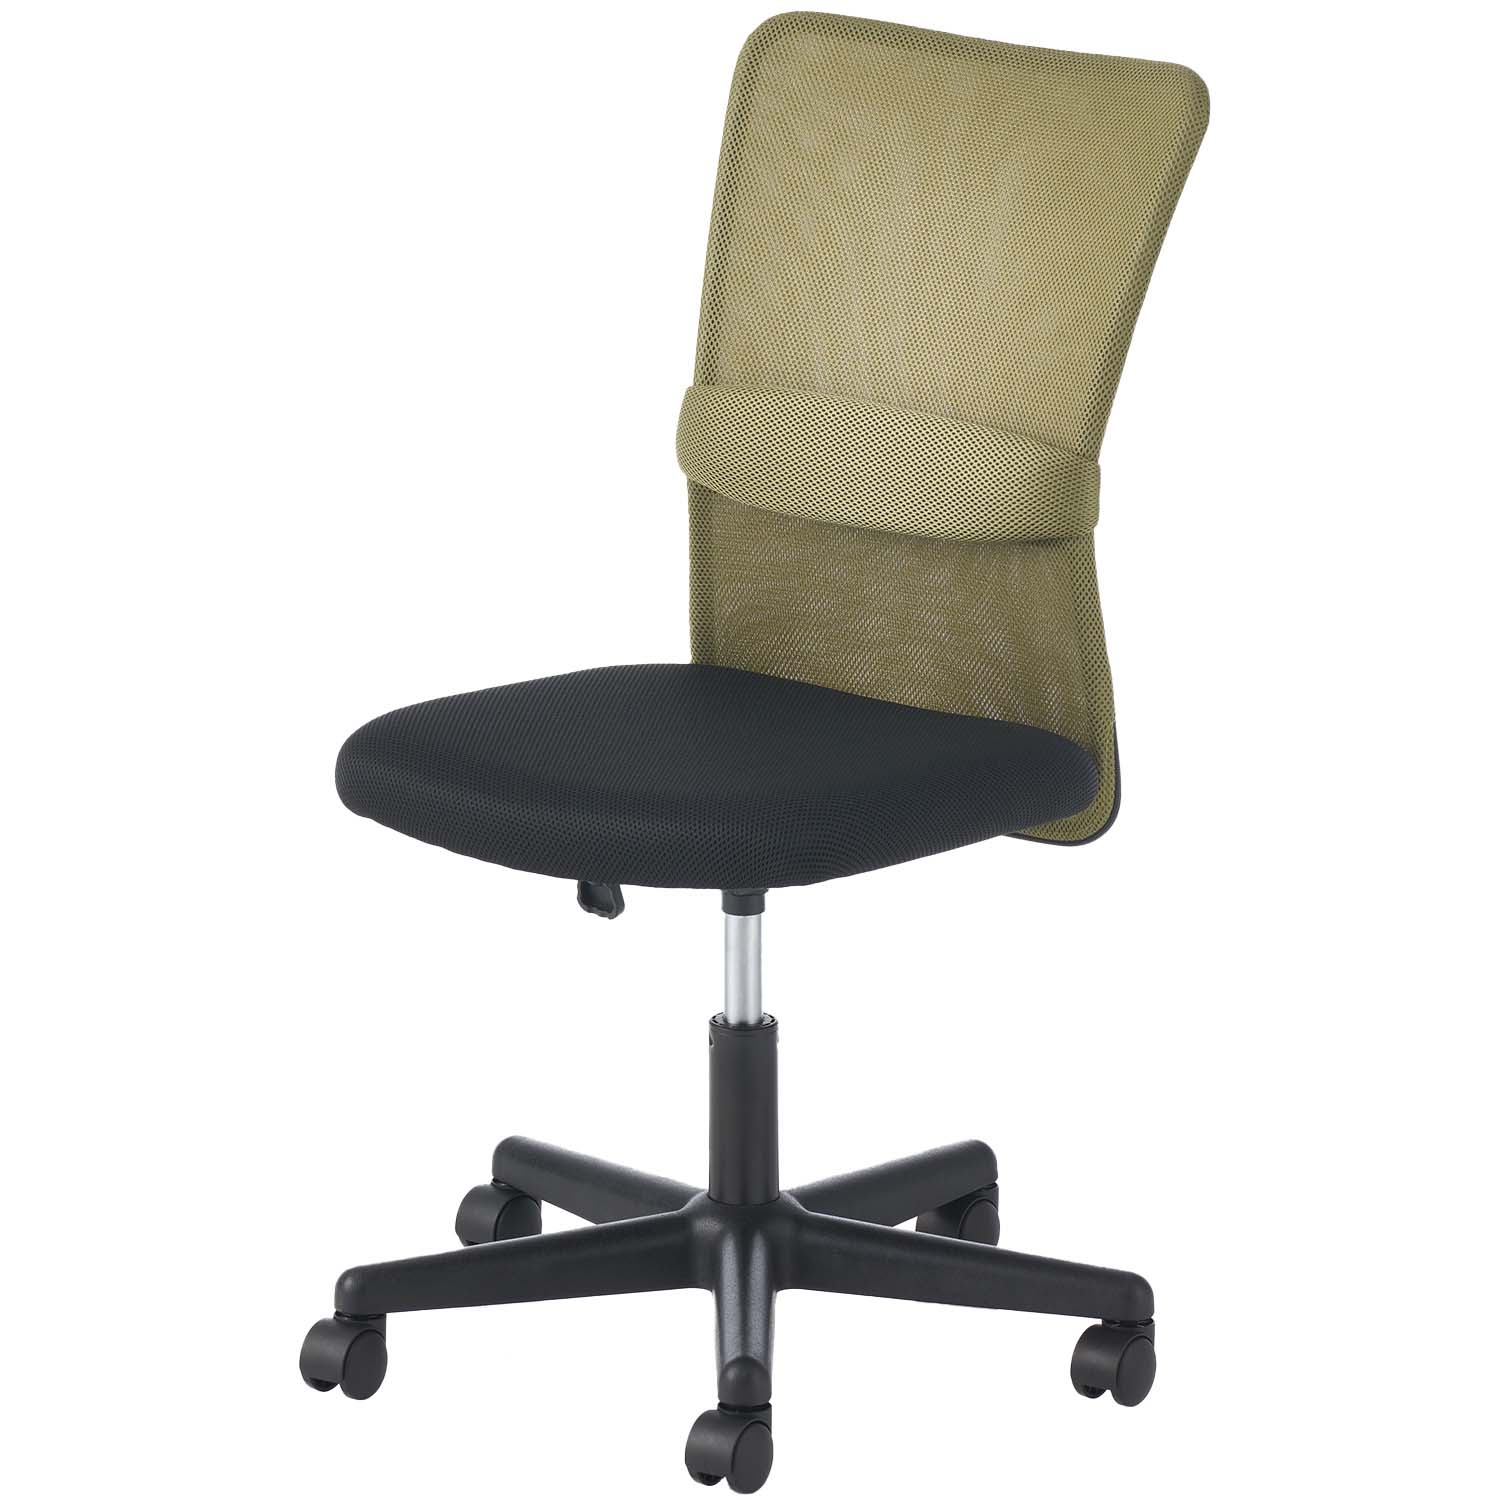 オフィスチェア メッシュ チャットチェア 椅子 キャスター付き ワークチェア 事務椅子 デスクチェア PCチェア  幅580×奥行580×高さ835-930mm